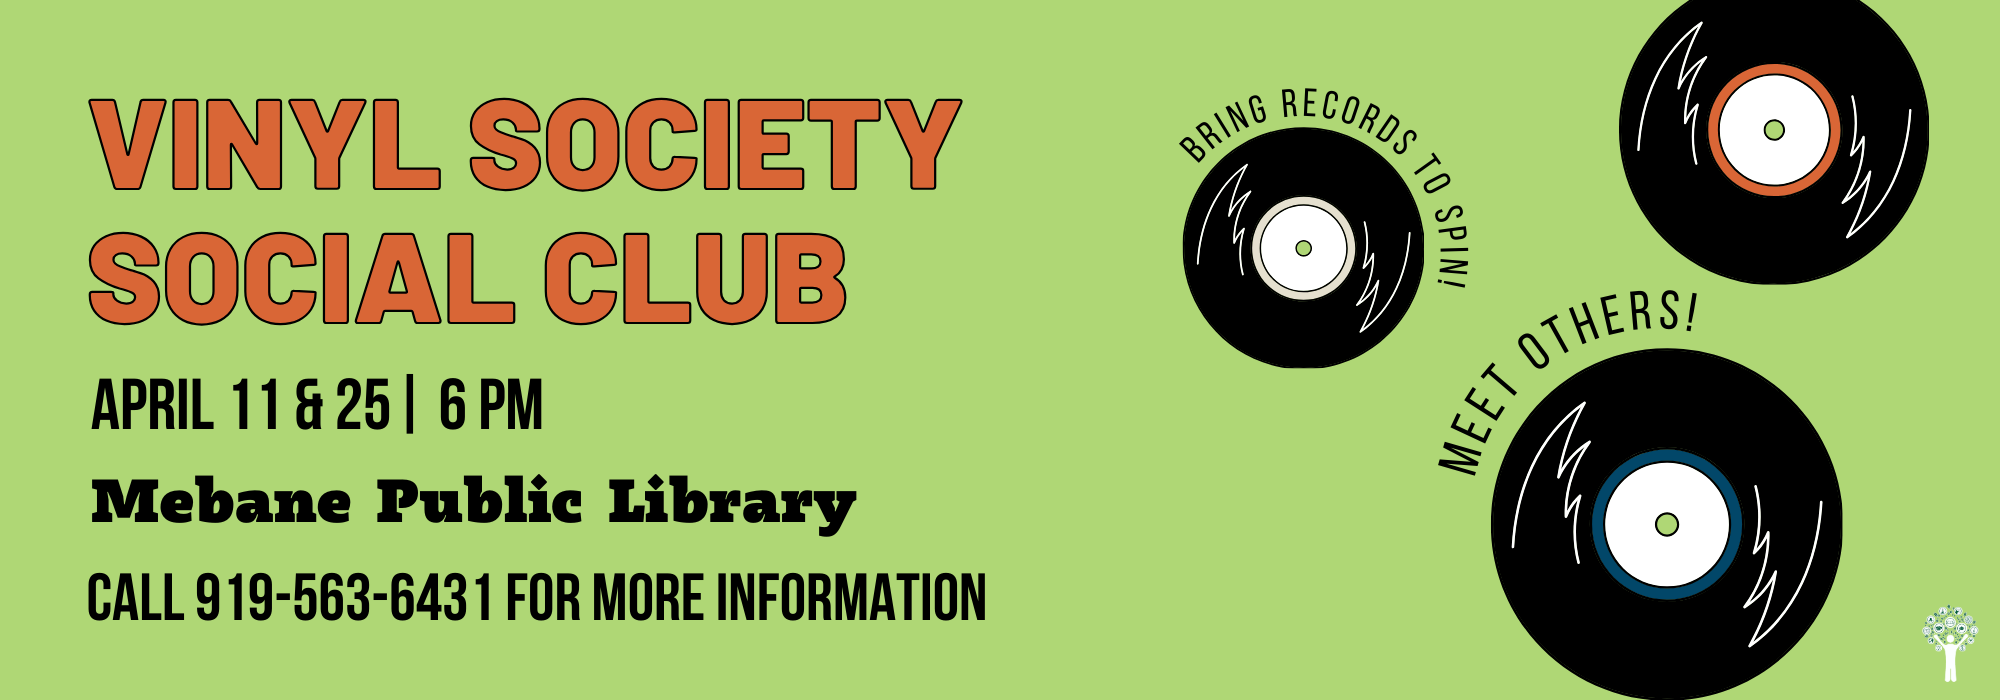 4.11 & 4.25 at 6 pm - Vinyl Society Social Club at Mebane